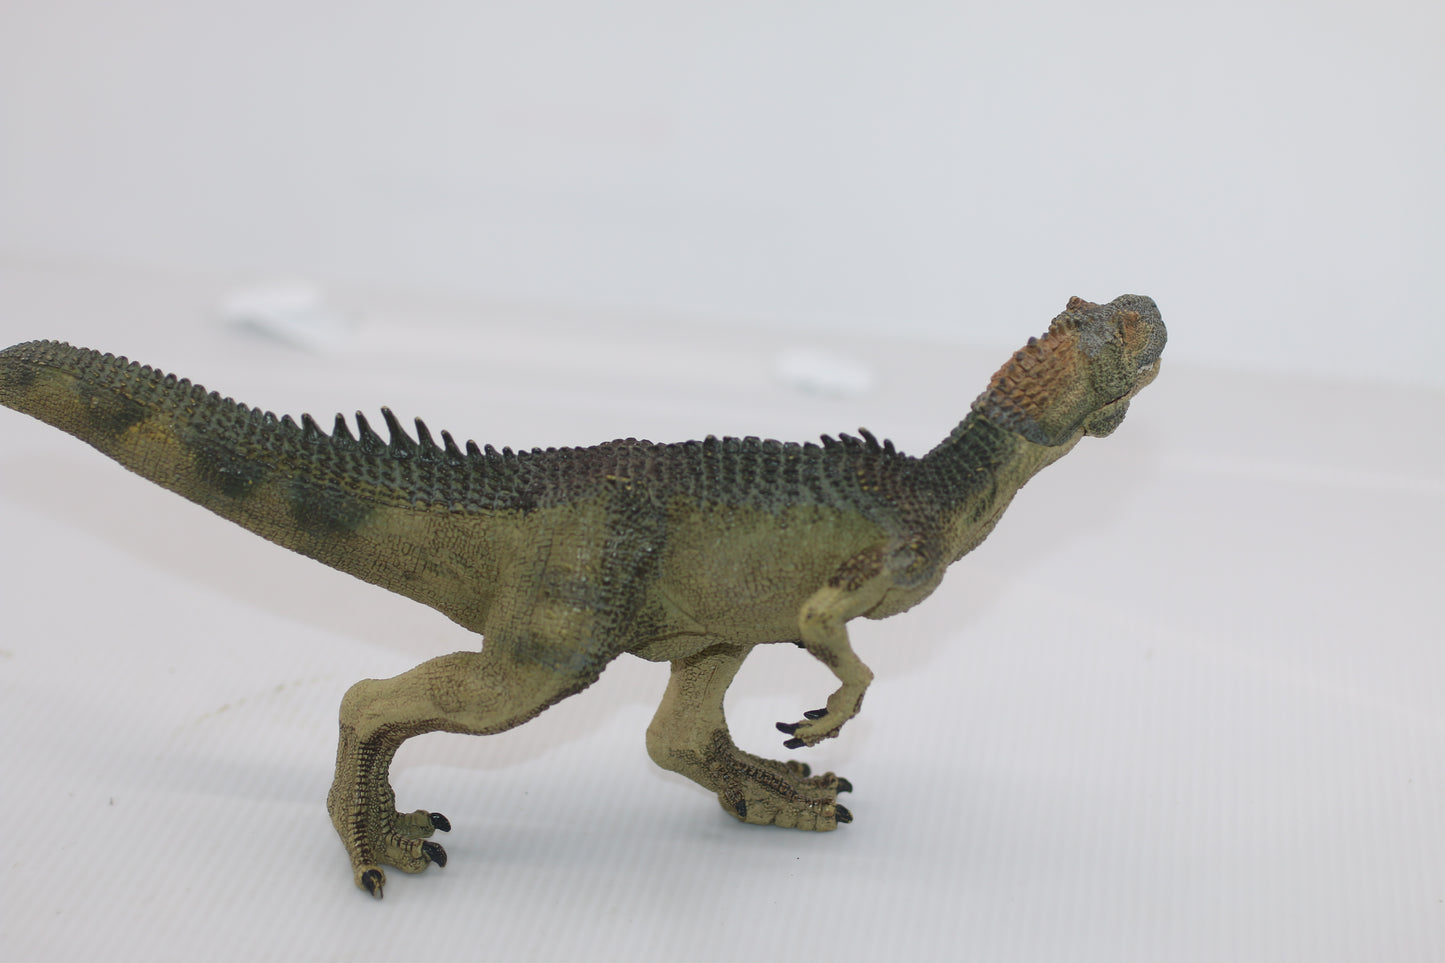 2008 Papo 55016 Allosaurus Dinosaur Figure Animal Toy Allosauridae Allosaurinae #2